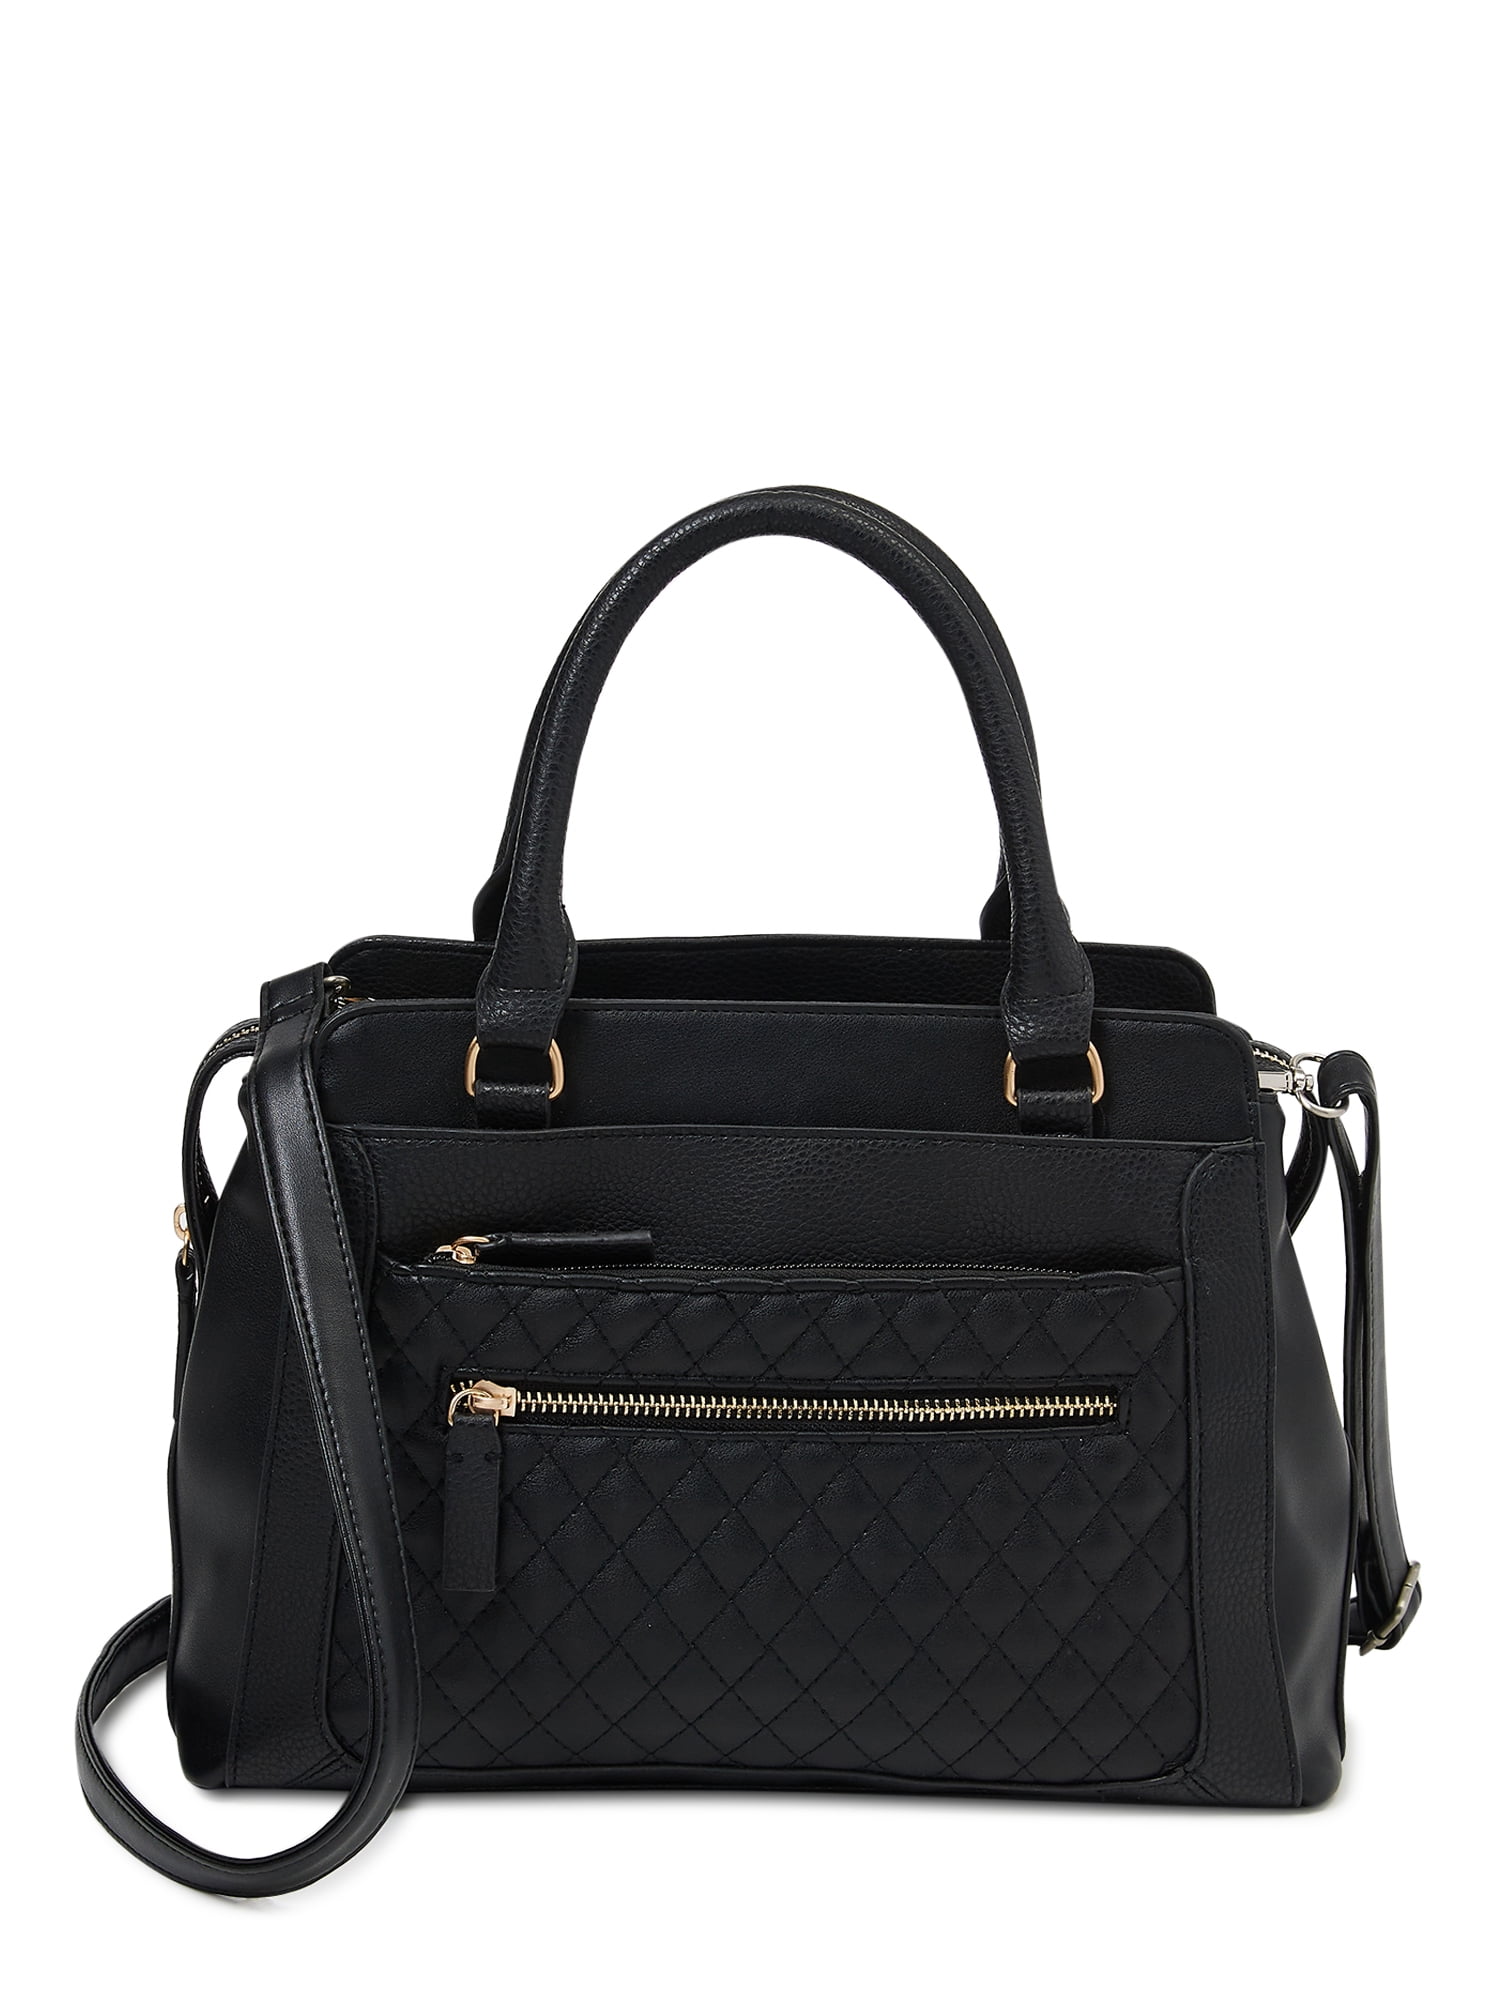 M2252-BKNT: Alma Tri-Color Satchel - Black/Natural - The Handbag Store